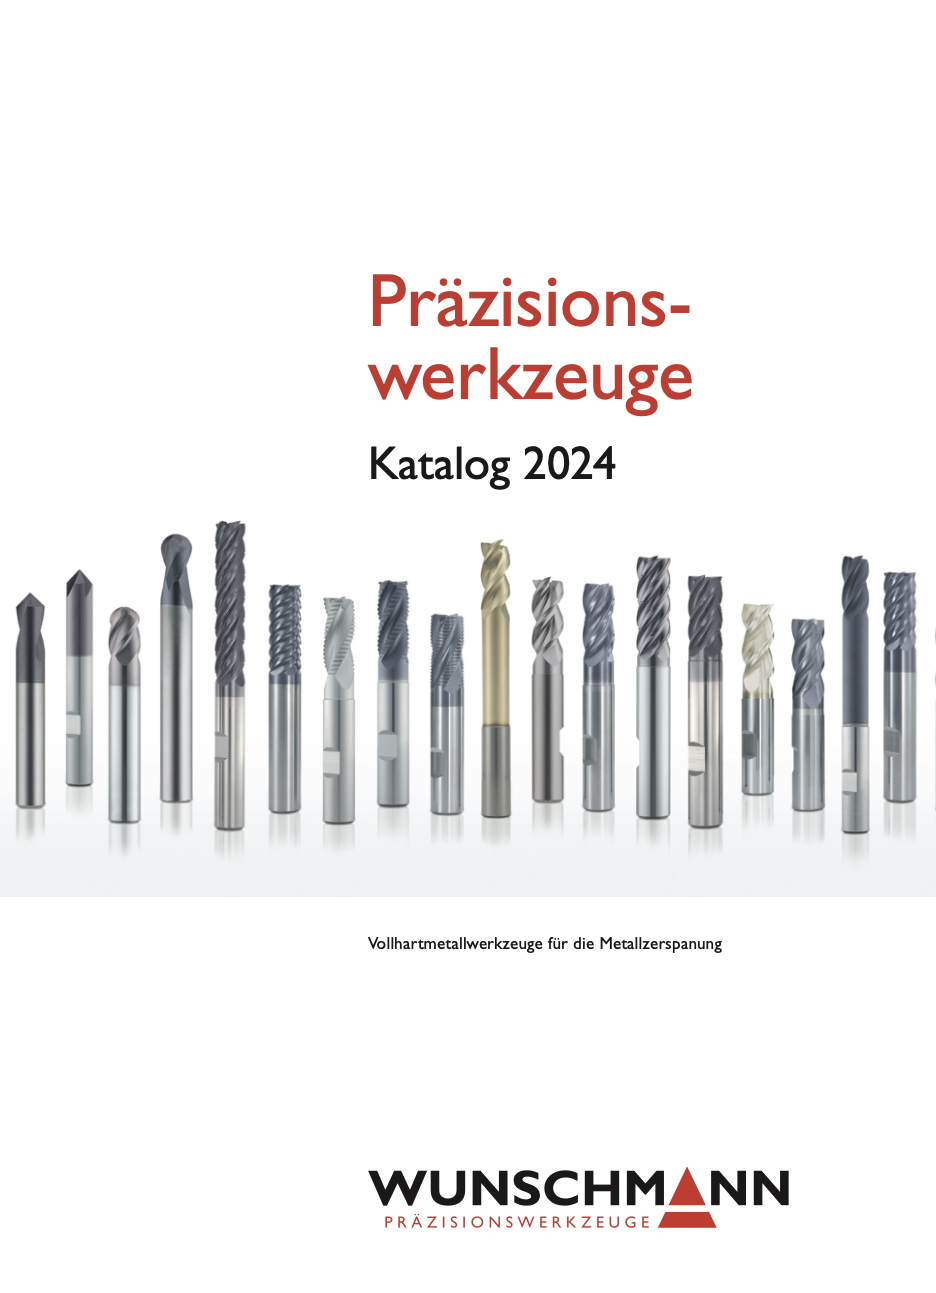 Wunschmann Werkzeugkatalog 2024 | Präzisionswerkzeuge für die Zerspanung